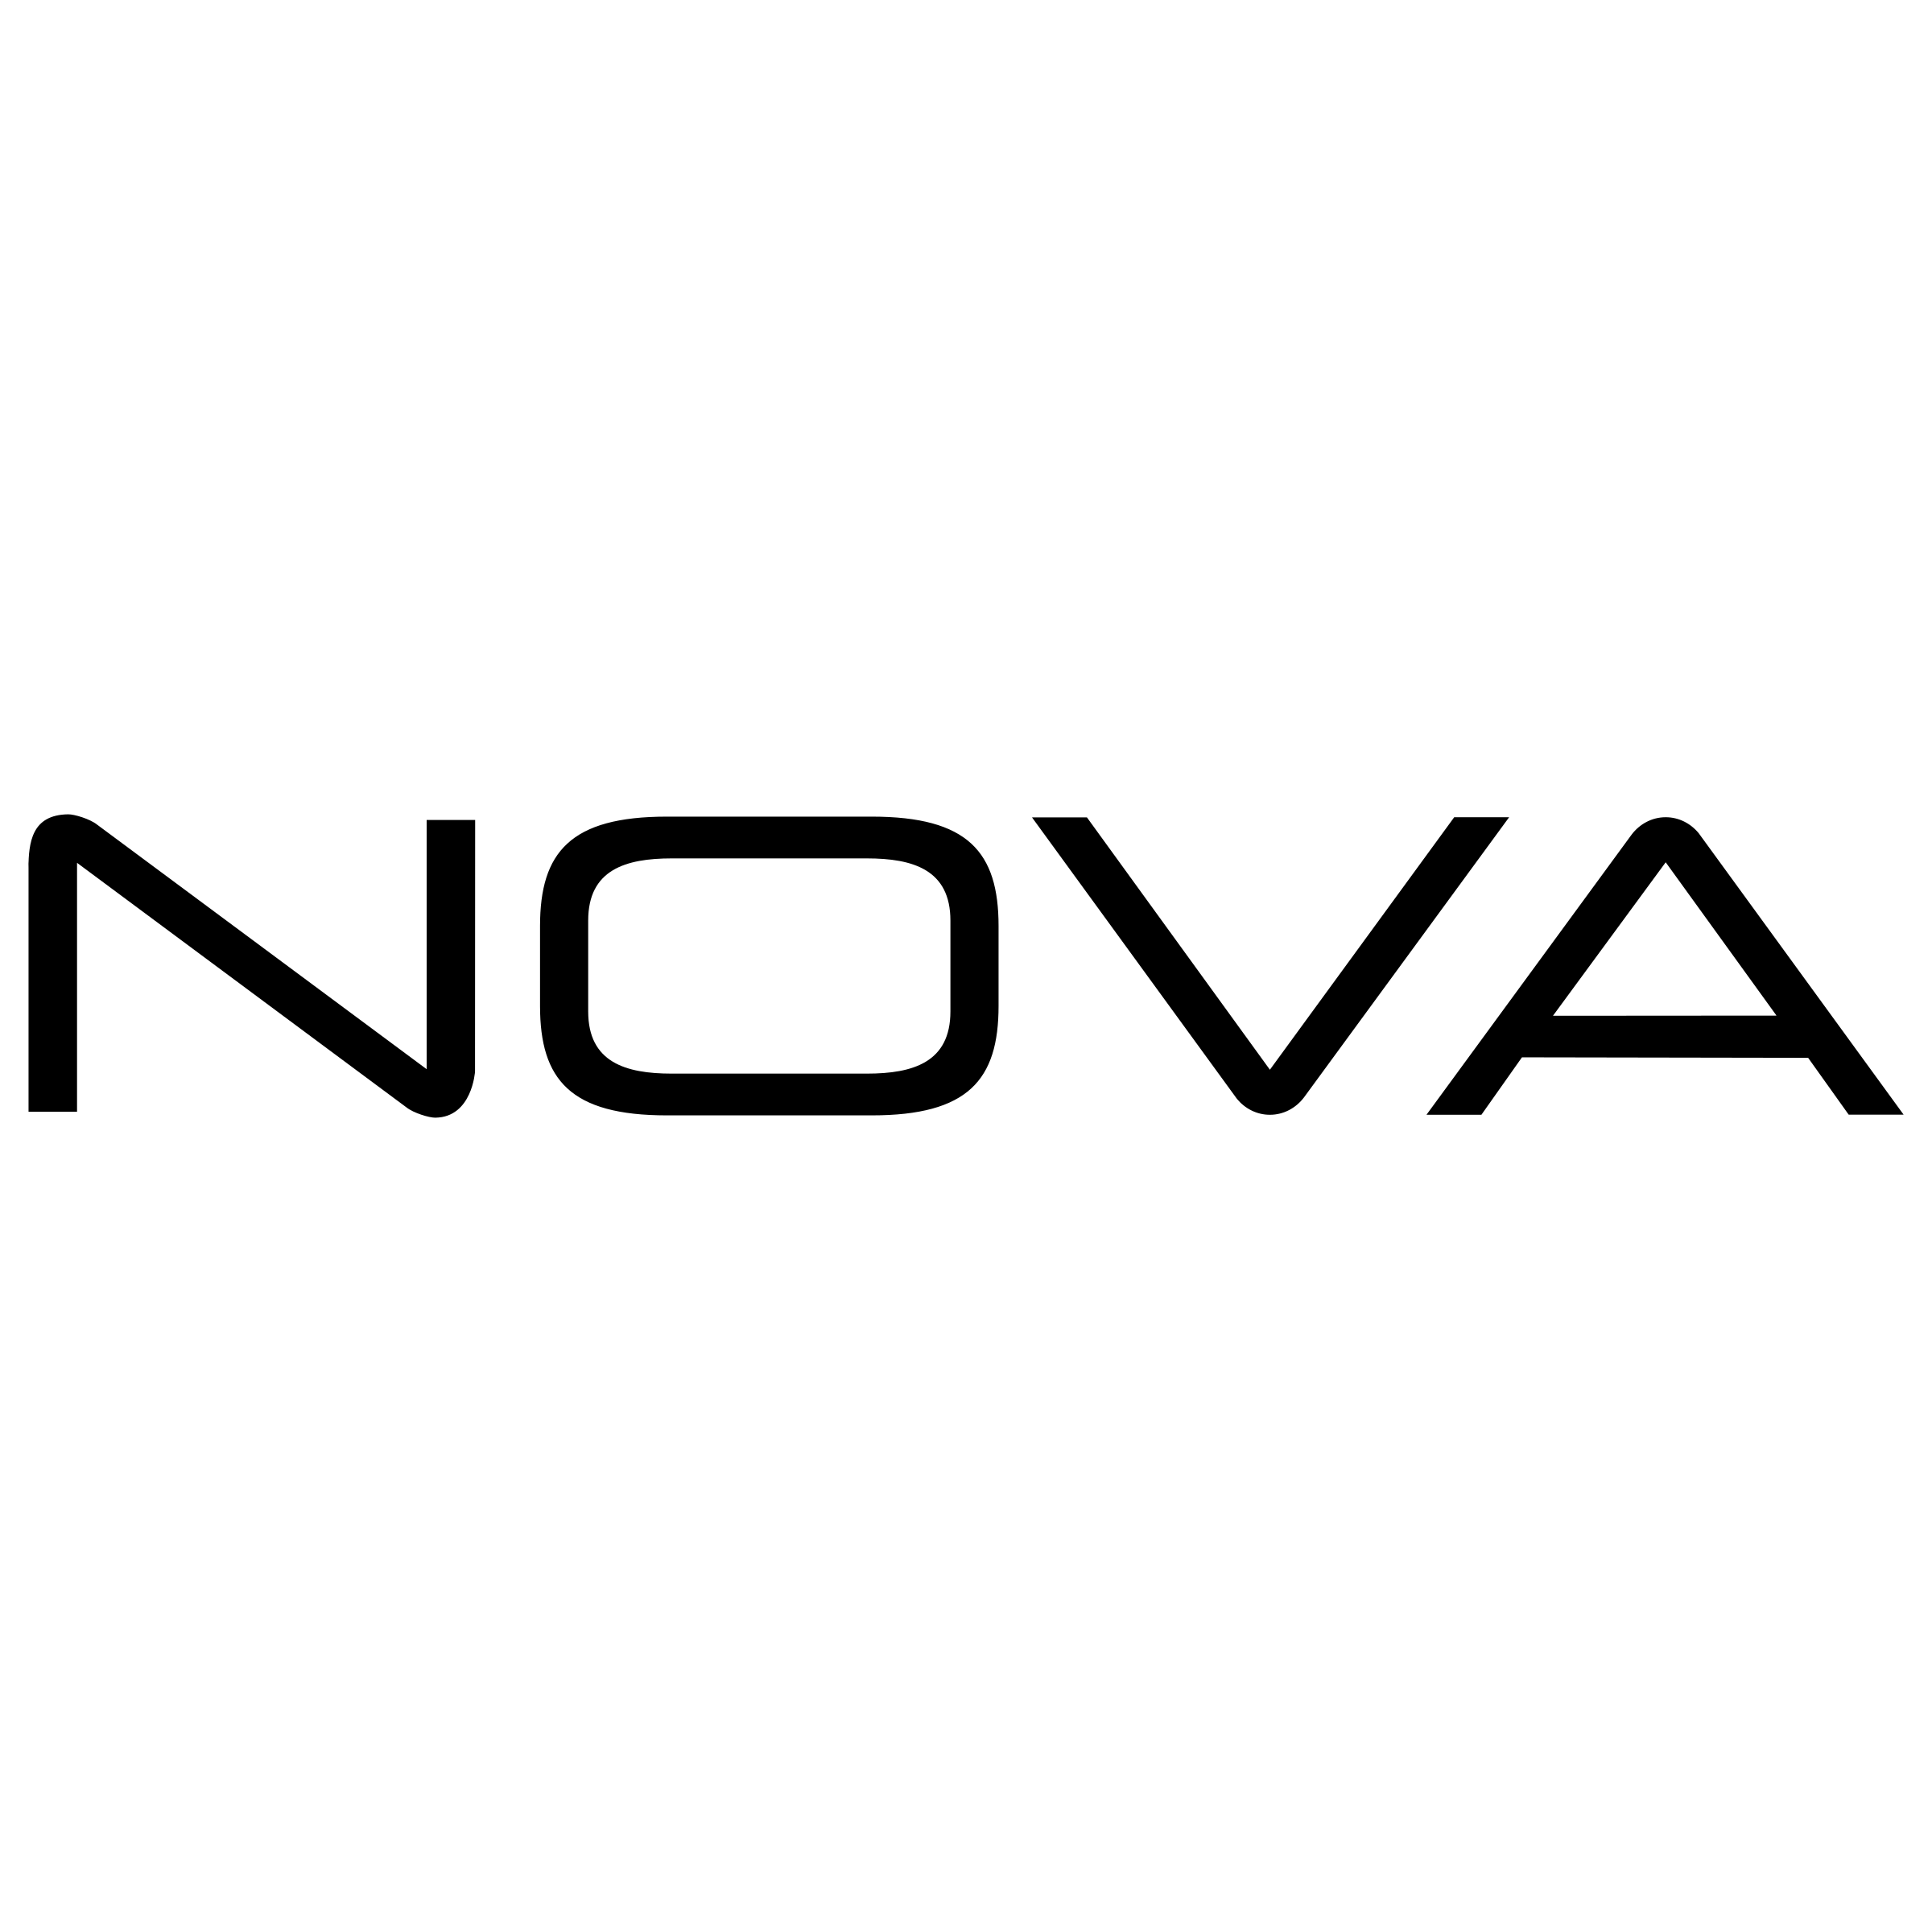 Nova Logo - Nova Logo PNG Transparent & SVG Vector - Freebie Supply